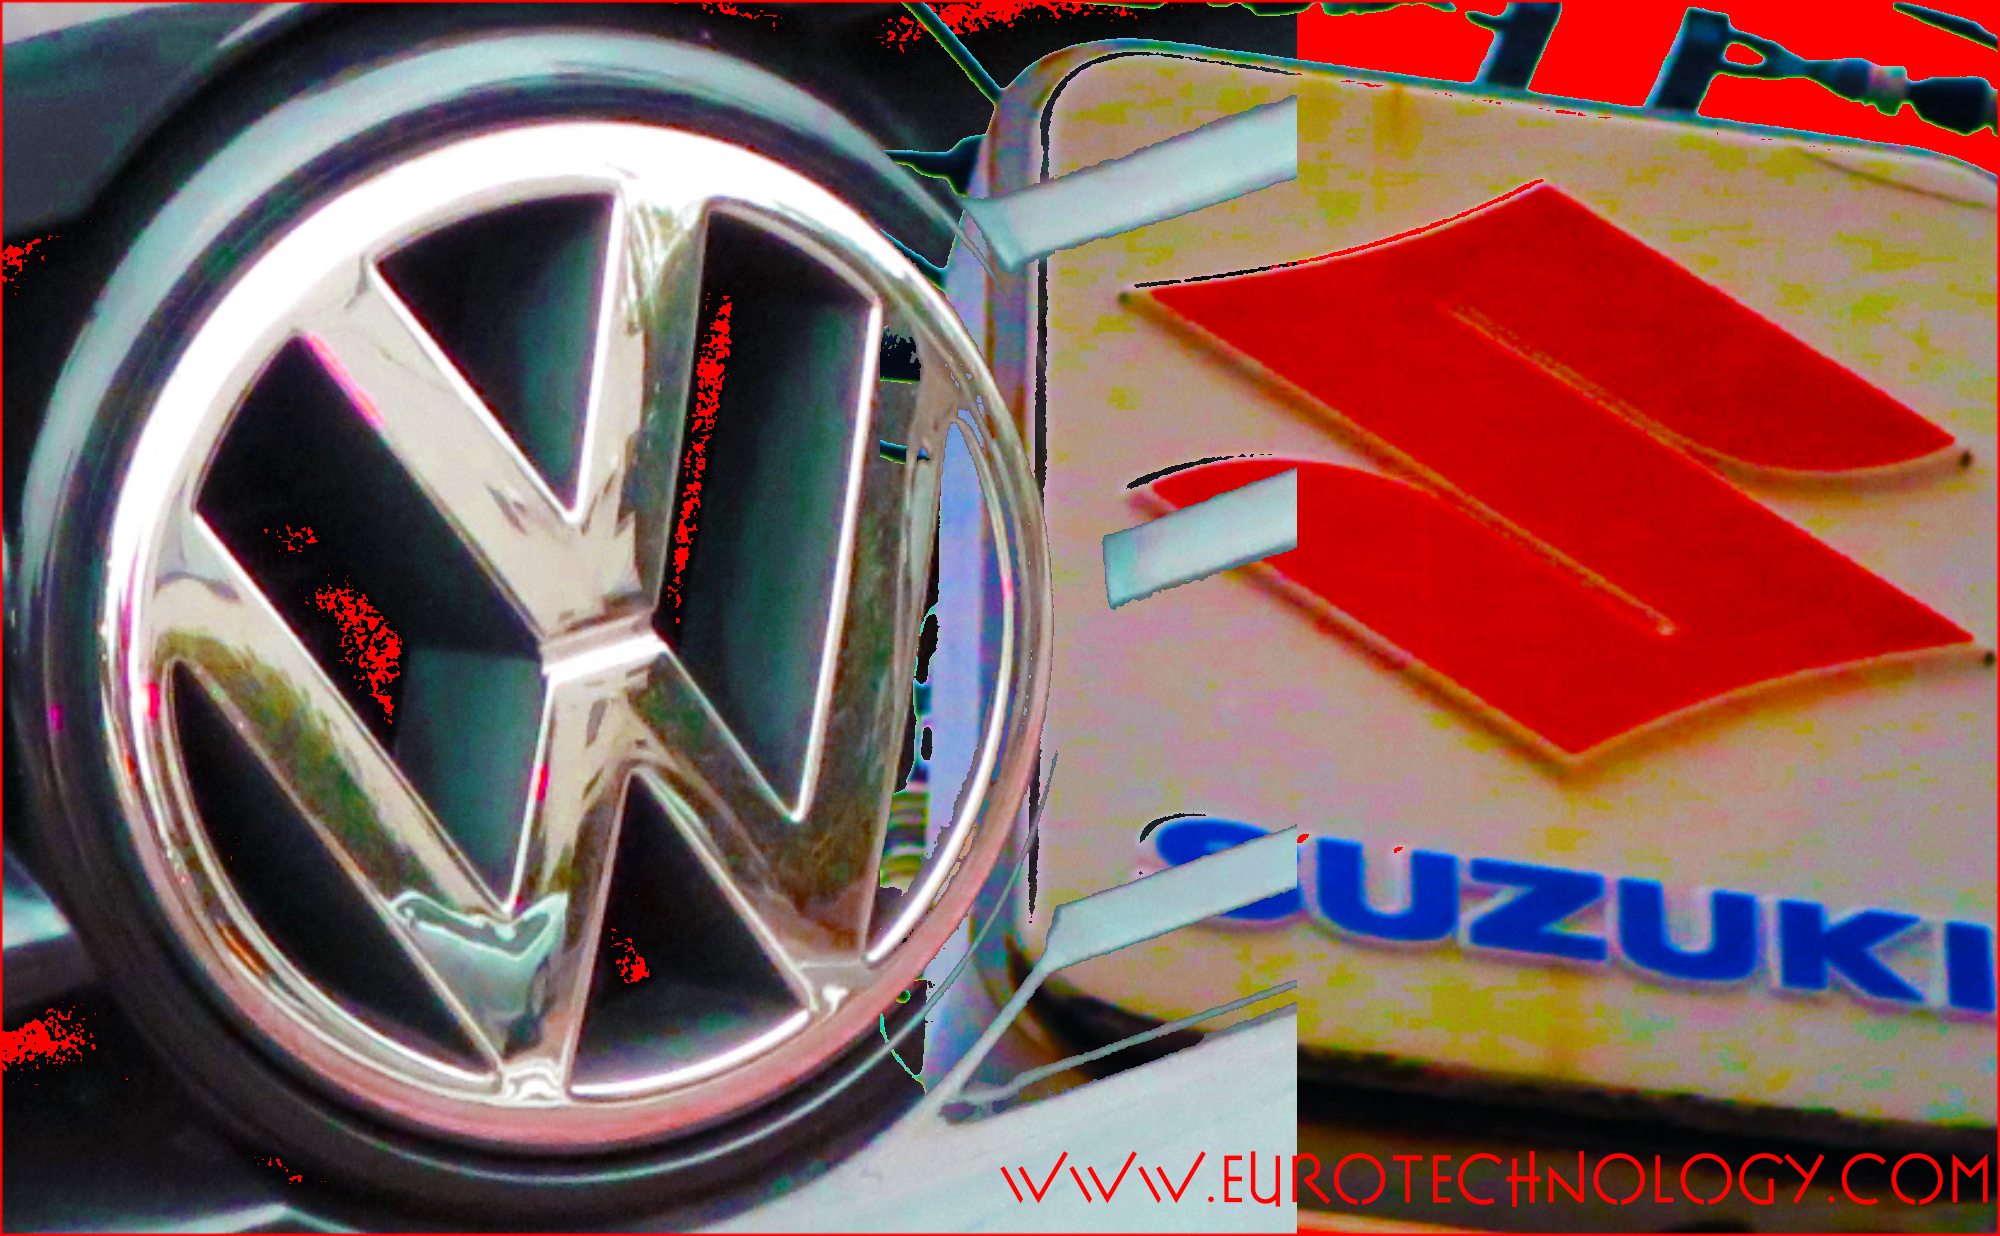 Volkswagen VW Suzuki eurotechnology.com